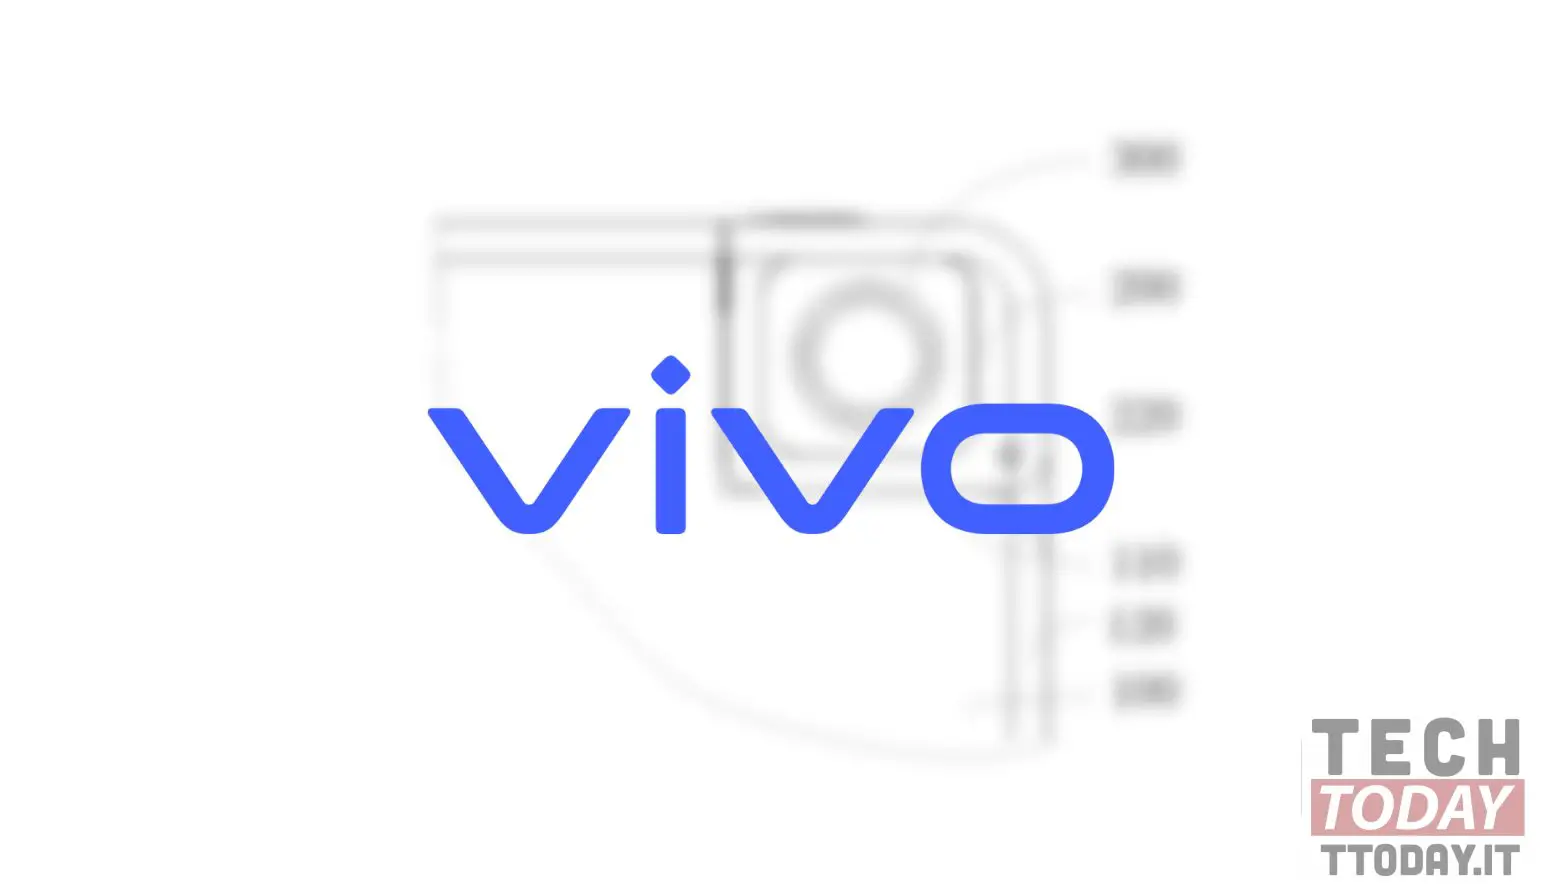 विवो एक हटाने योग्य सेल्फी कैमरे वाले स्मार्टफोन के बारे में सोचता है